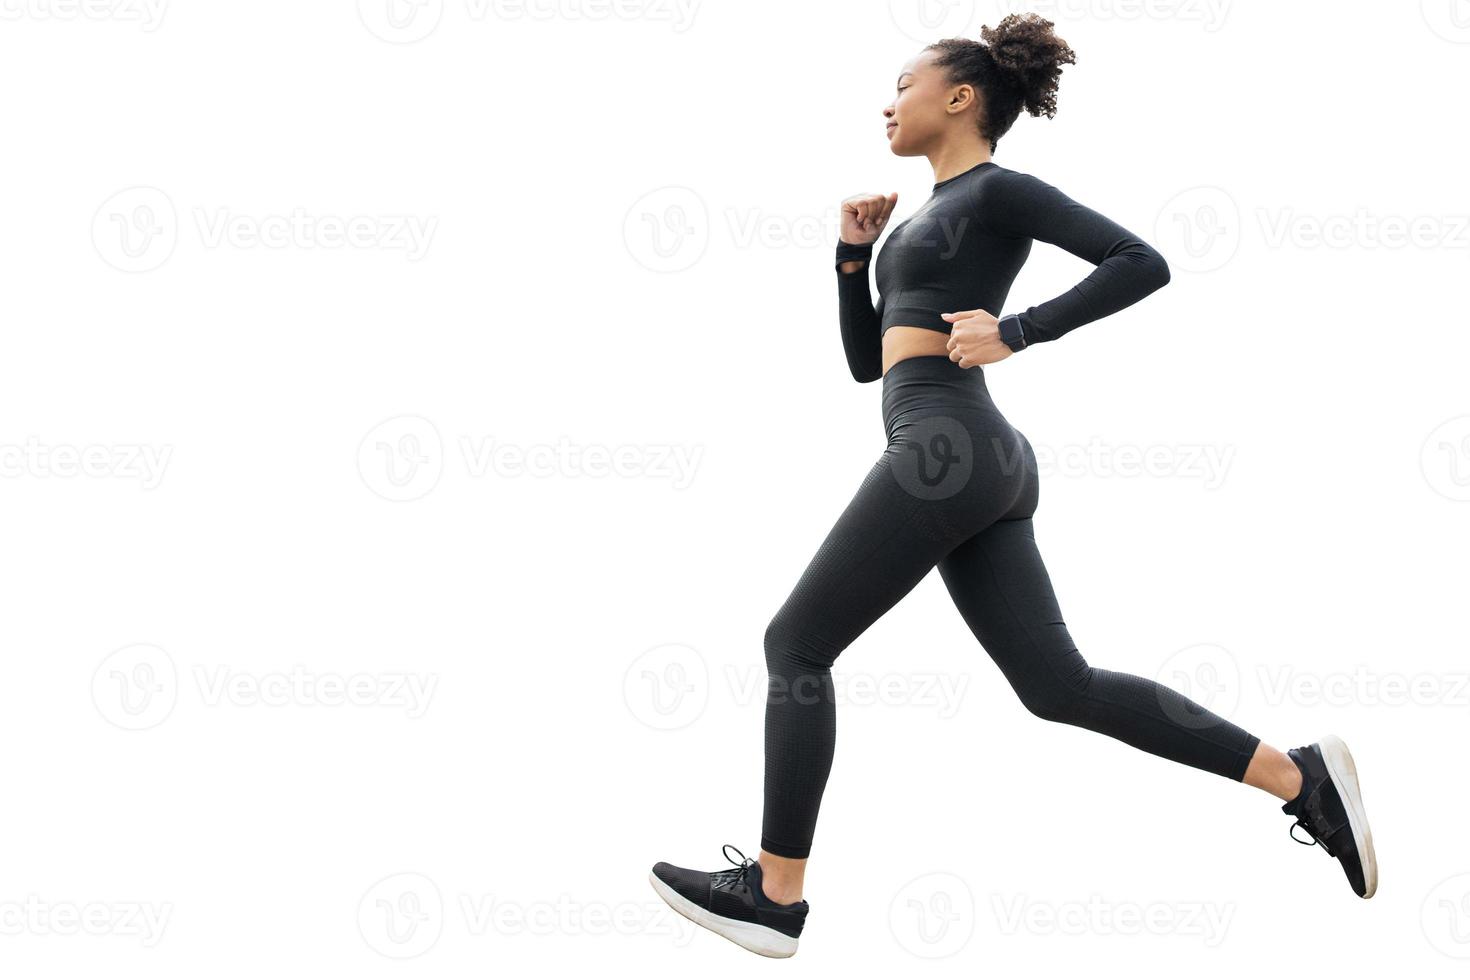 uma corredora está fazendo um treinamento físico em um agasalho justo. foto